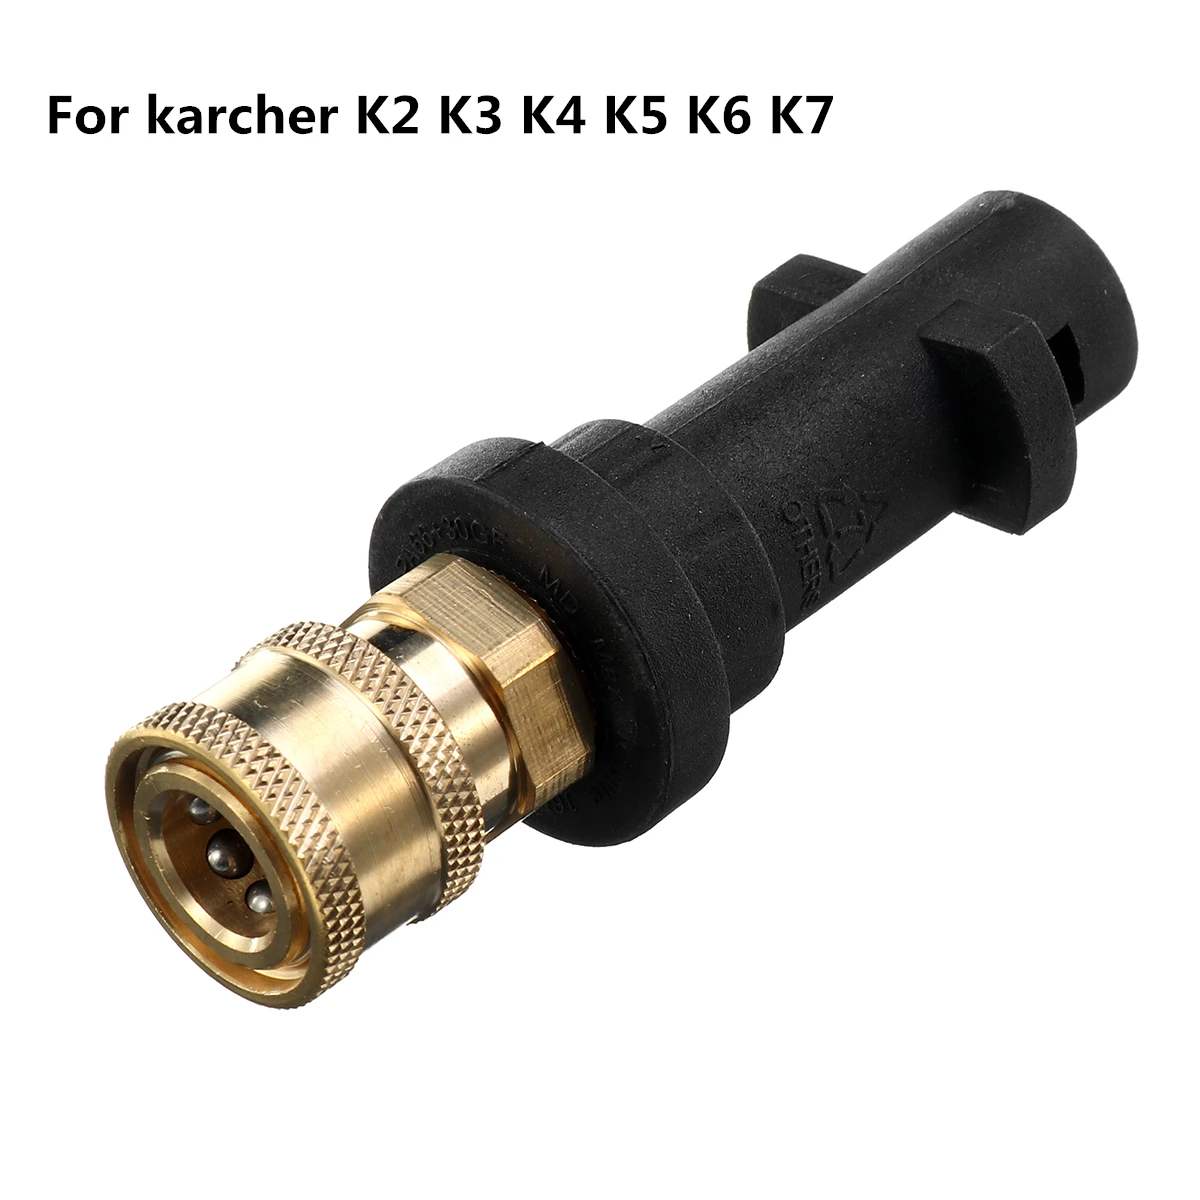 Hochdruck Unterlegscheibe Lance Stab Adapter für Karcher K2-K7 4000PSI Wasser 